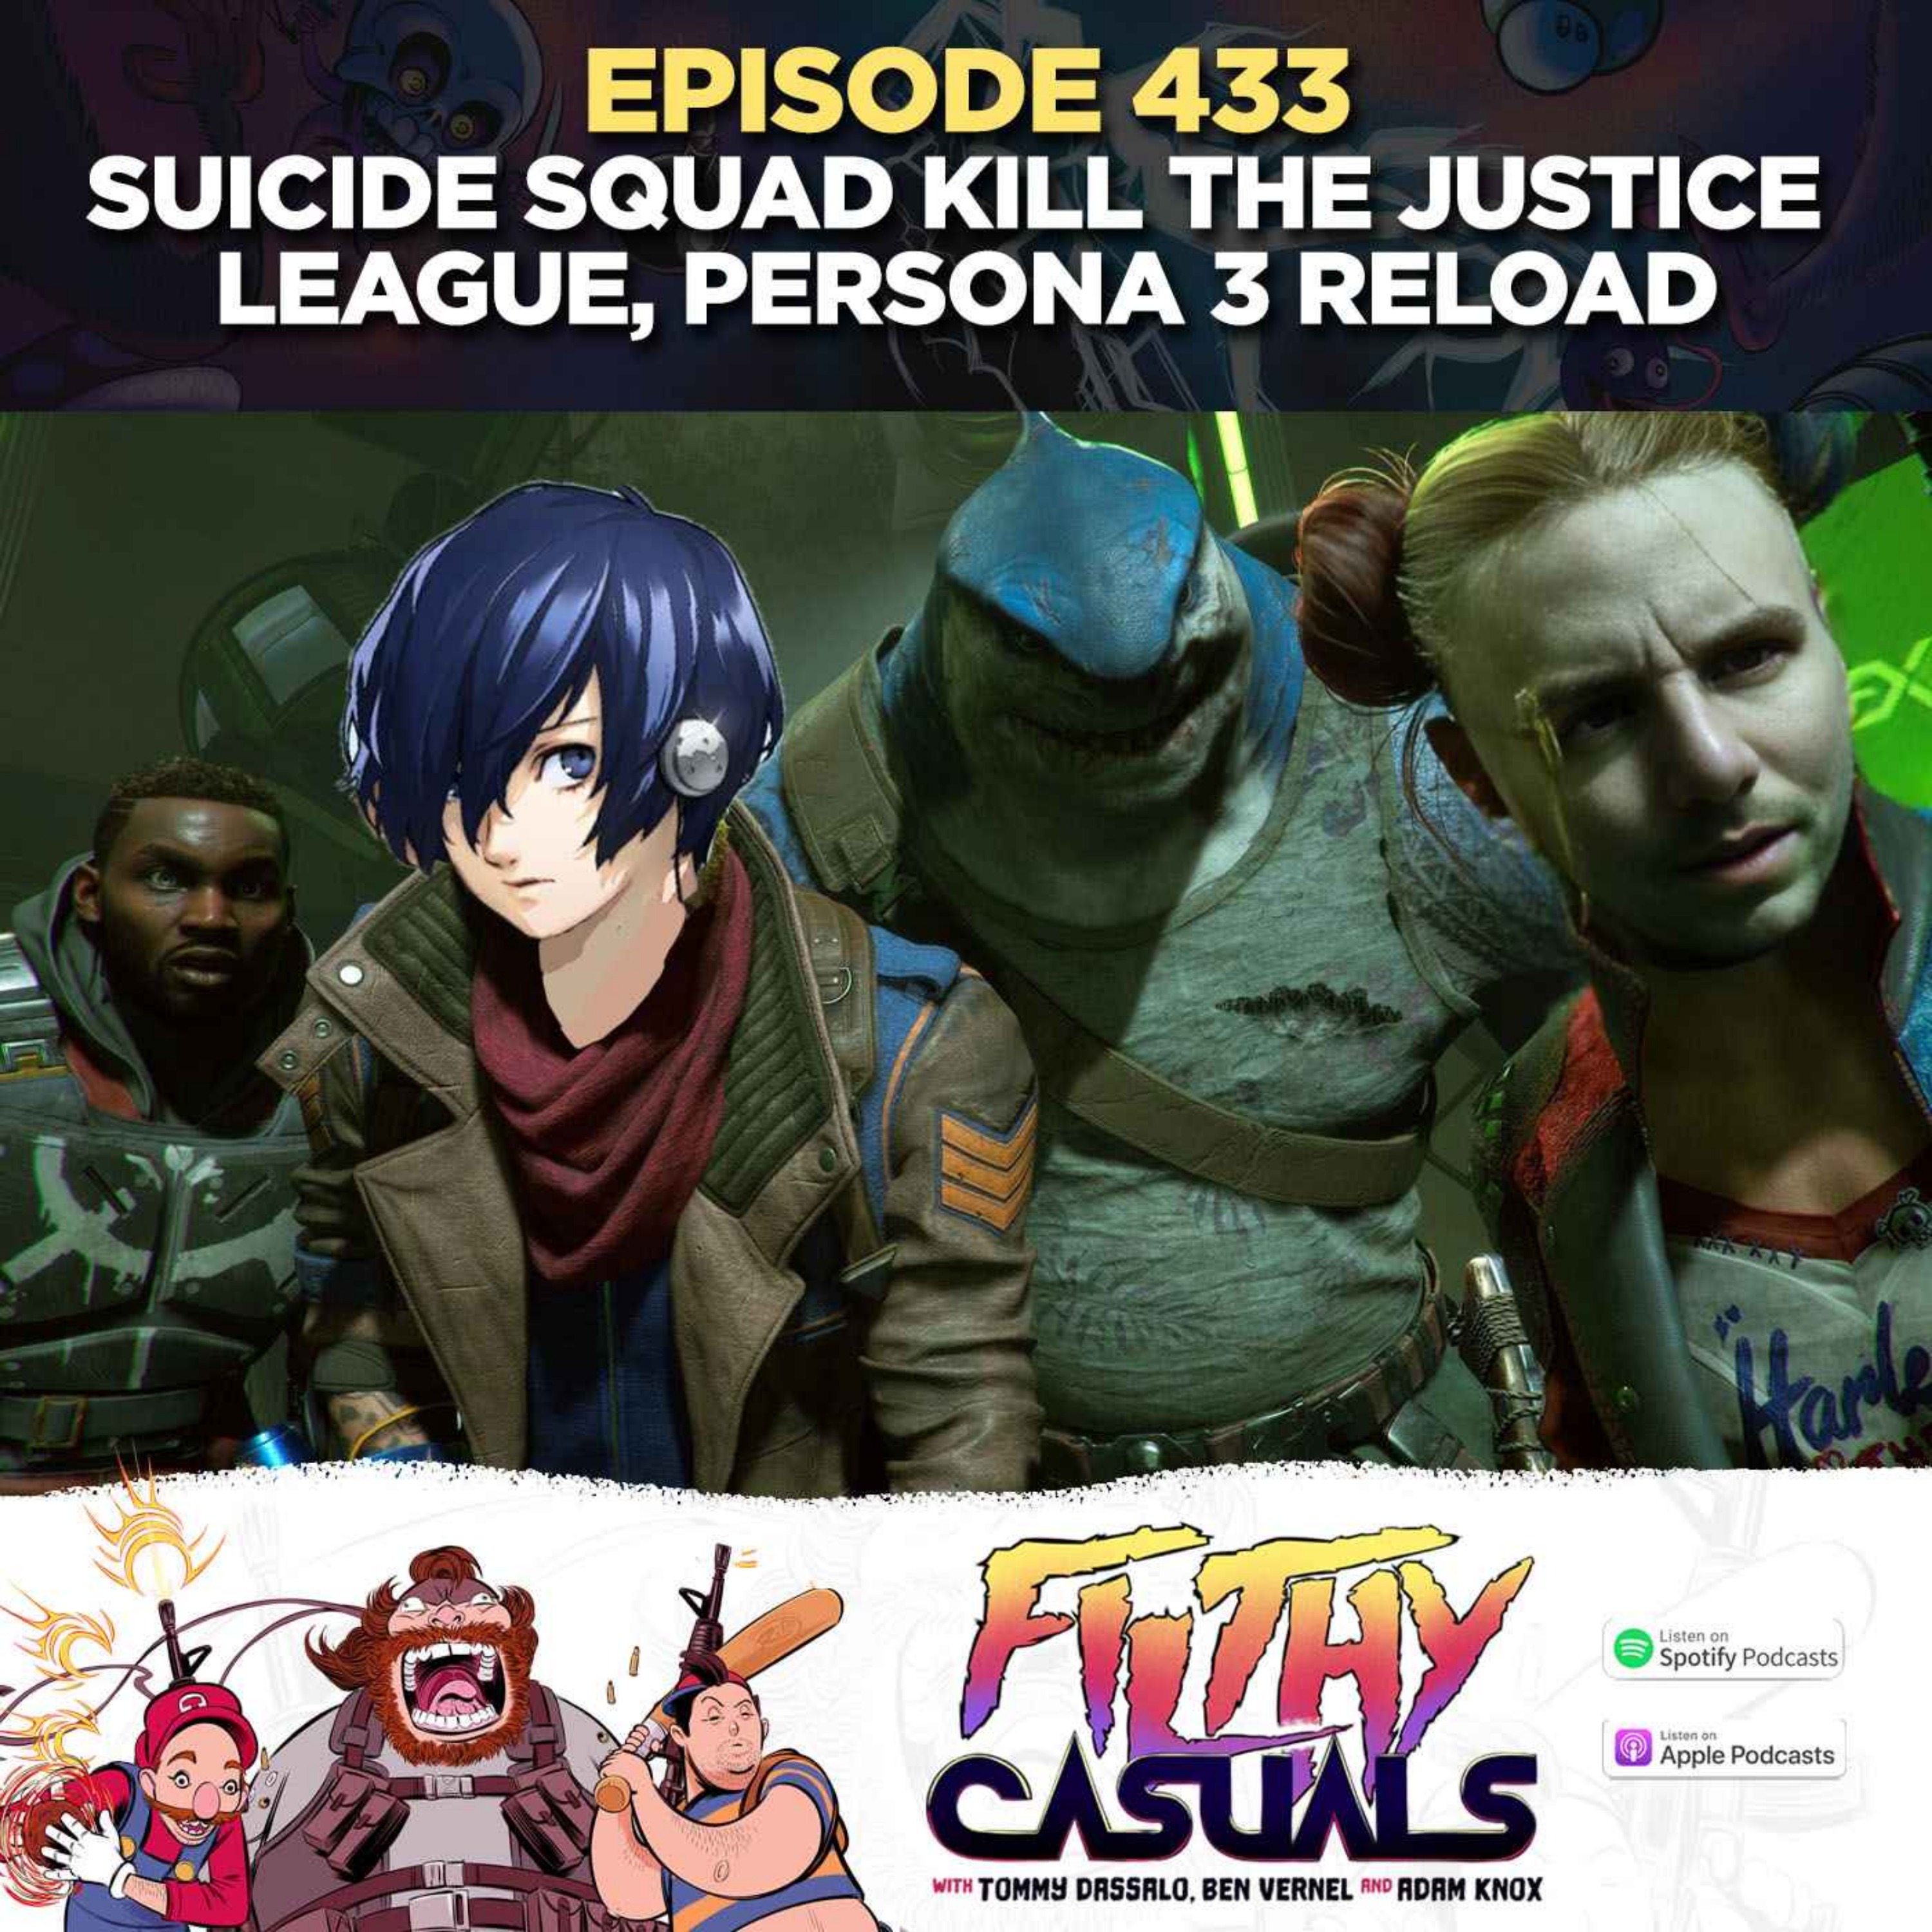 Episode 433: Suicide Squad Kill the Justice League, Persona 3 Reload